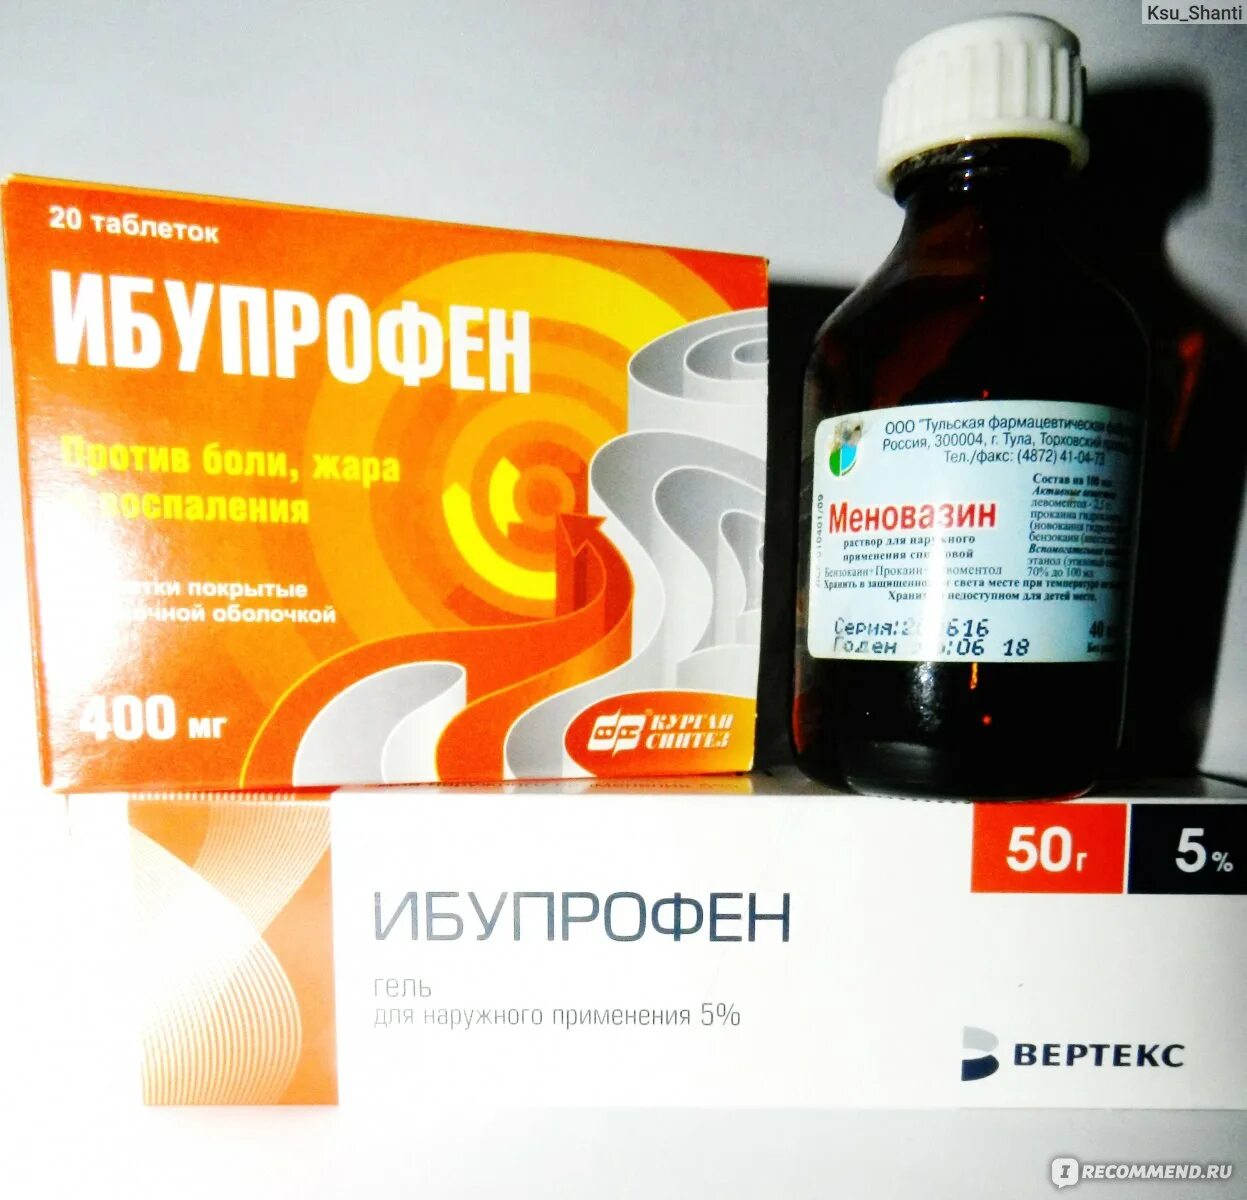 Ибупрофен отзывы врачей. Меновазин и таблетки ибупрофен. Ибупрофен для суставов. Таблетки ибупрофена с меновазином. Меновазин и ибупрофен растирка для суставов.